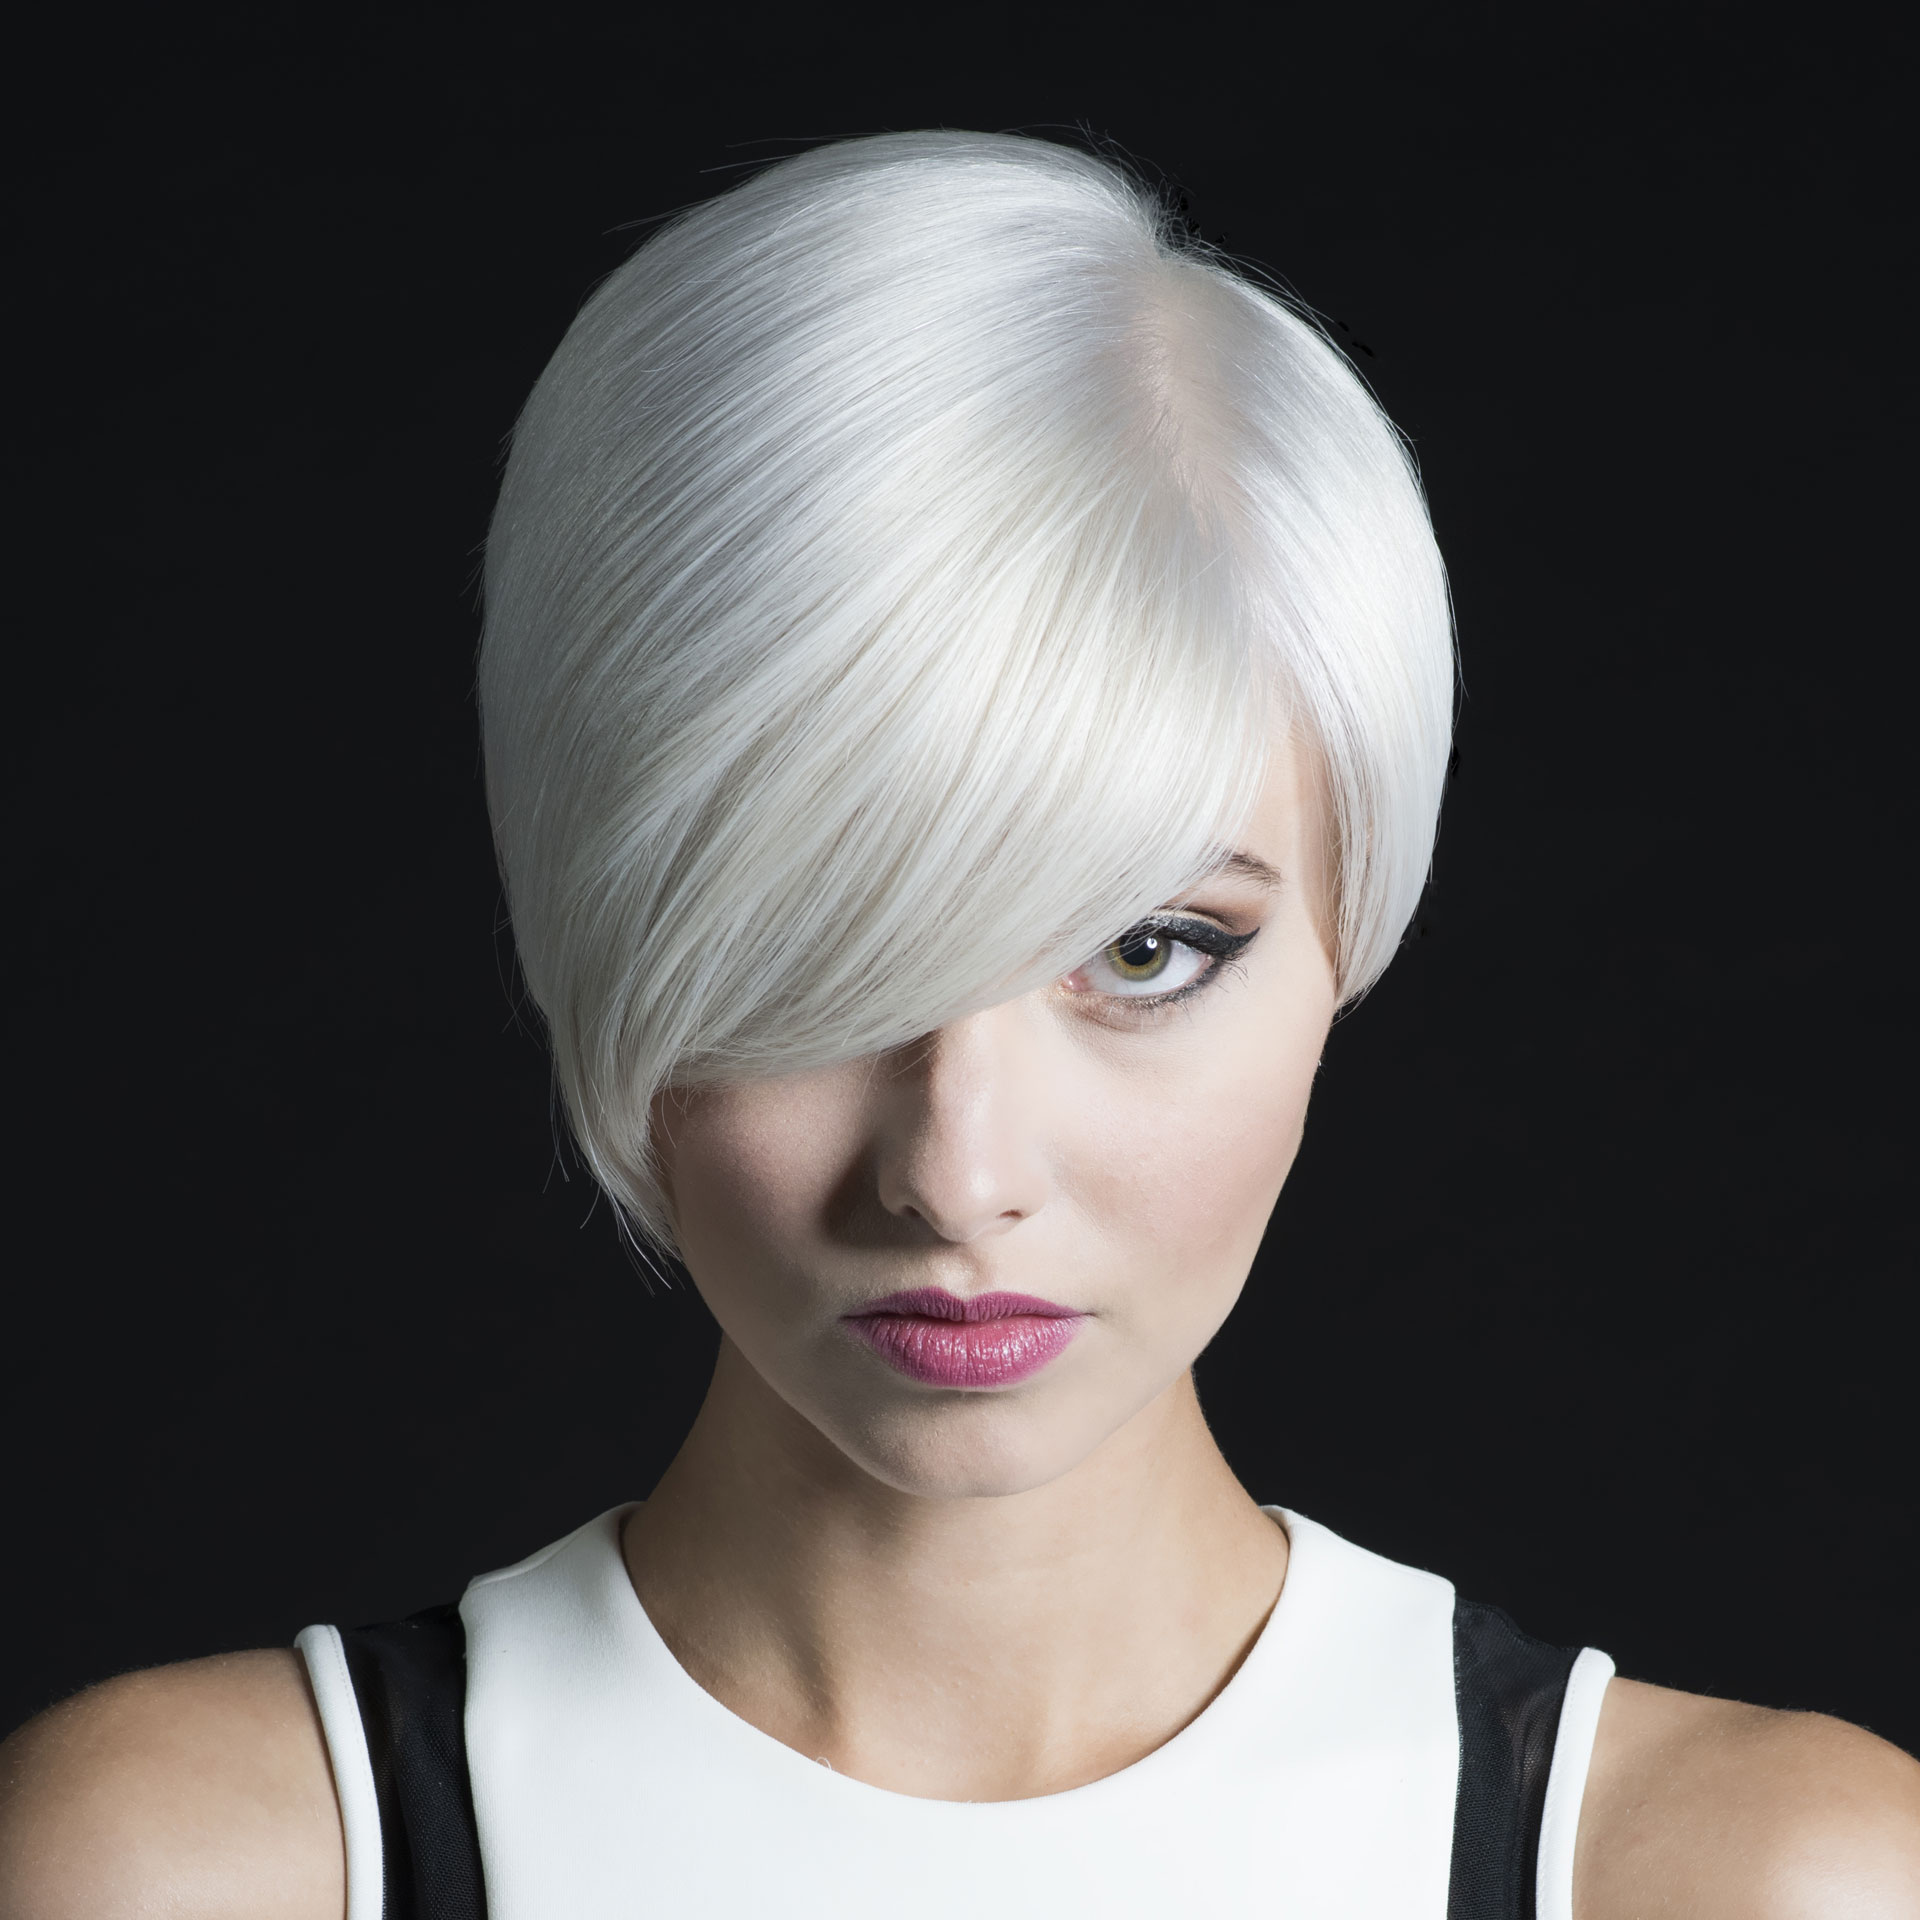 Hair Design / Color2 — Fix Salon  Voted Best Salon for Cut and Color  Seattle Magazine